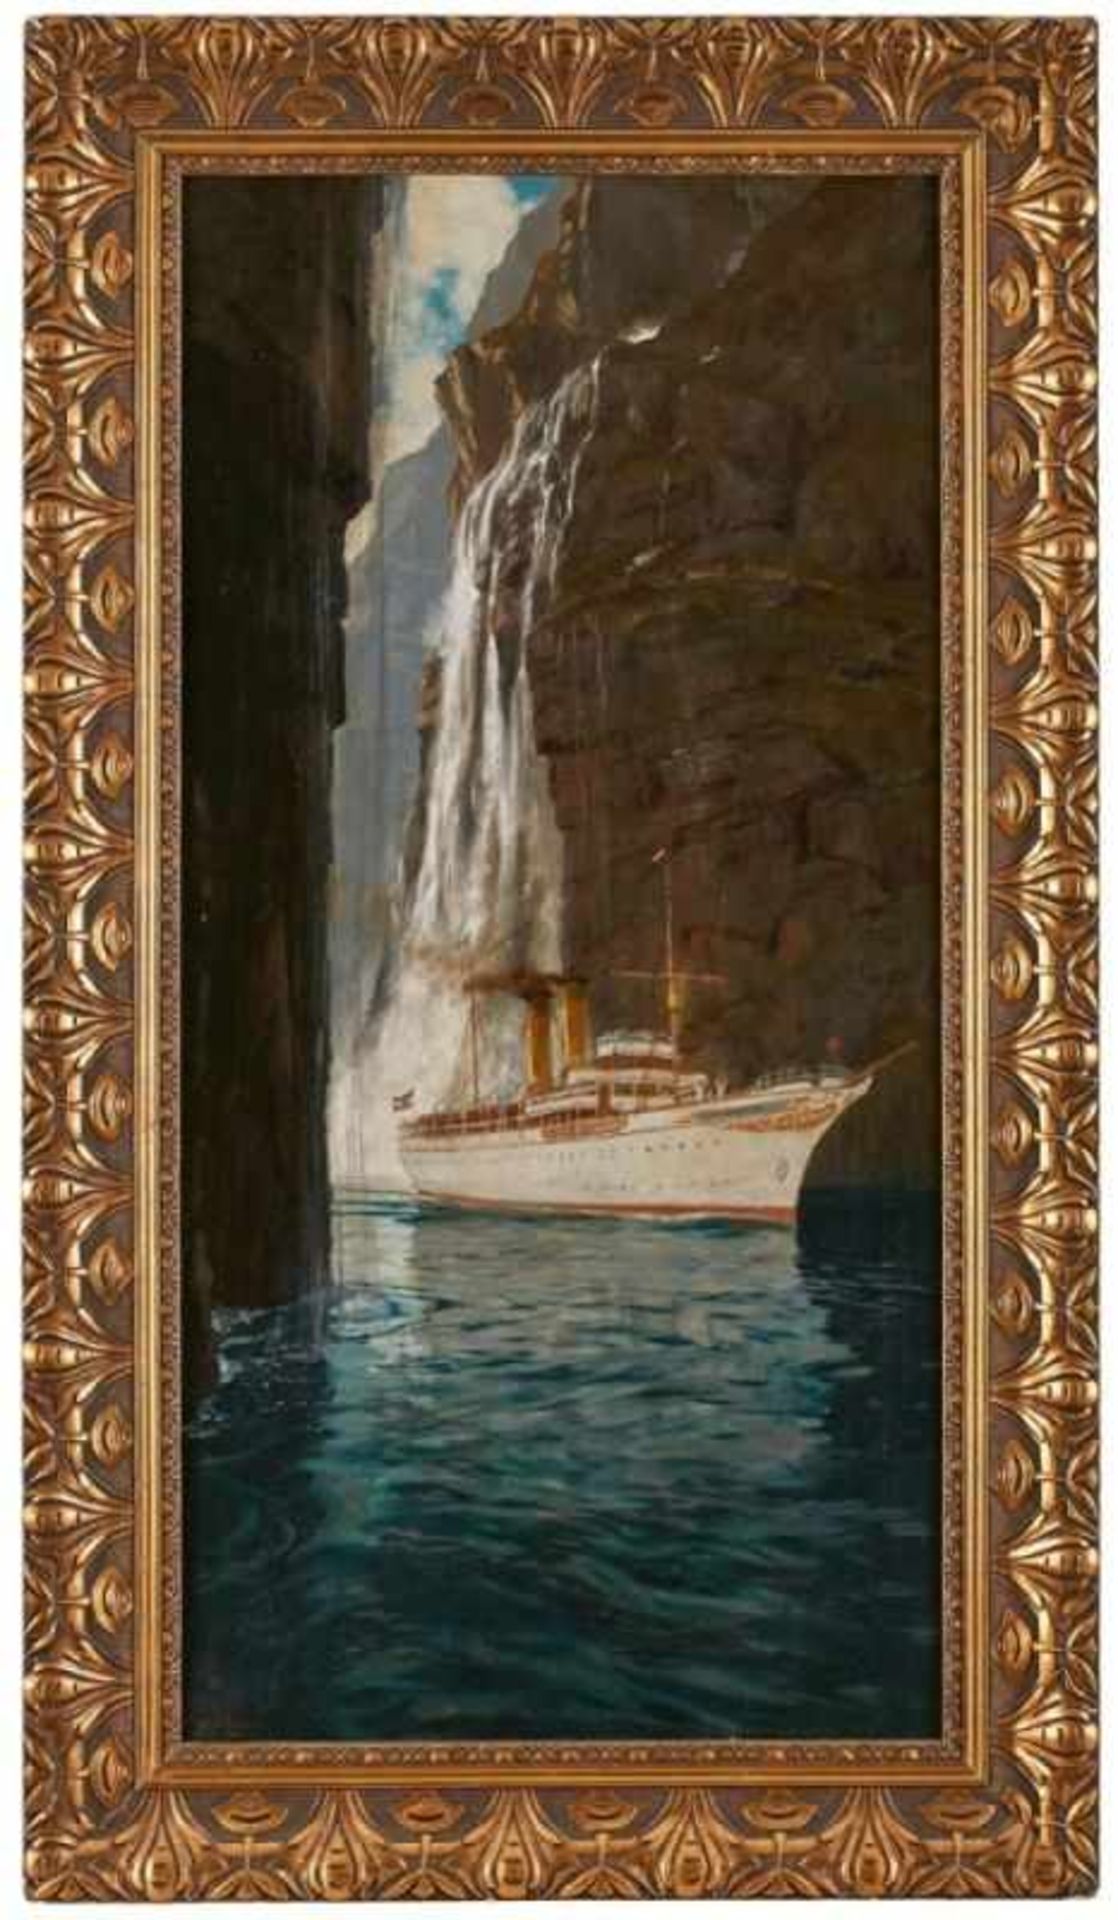 Gemälde Michael Zeno Diemer1867 München - 1939 Oberammergau Marinemaler. Stud. an der Akademie in